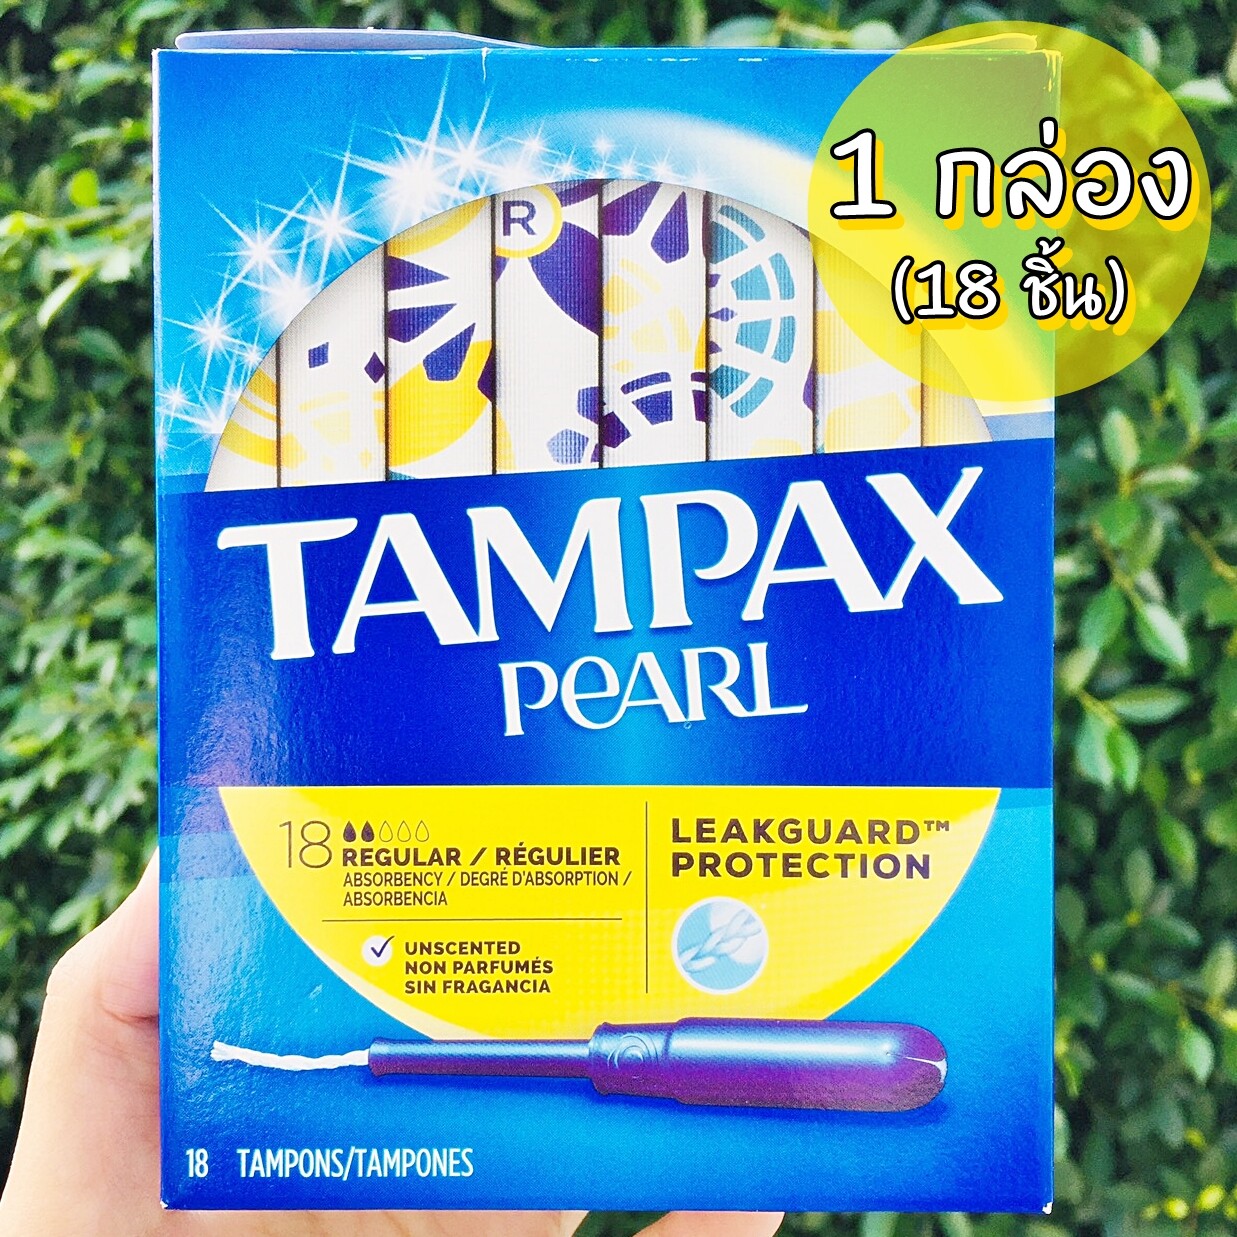 ผ้าอนามัยแบบสอด เหมาะกับวันมาปกติ 18 ชิ้น Tampax® Pearl Tampons with Plastic Applicator, Regular Absorbency 18 Pieces ปราศจากน้ำหอม #Tampon